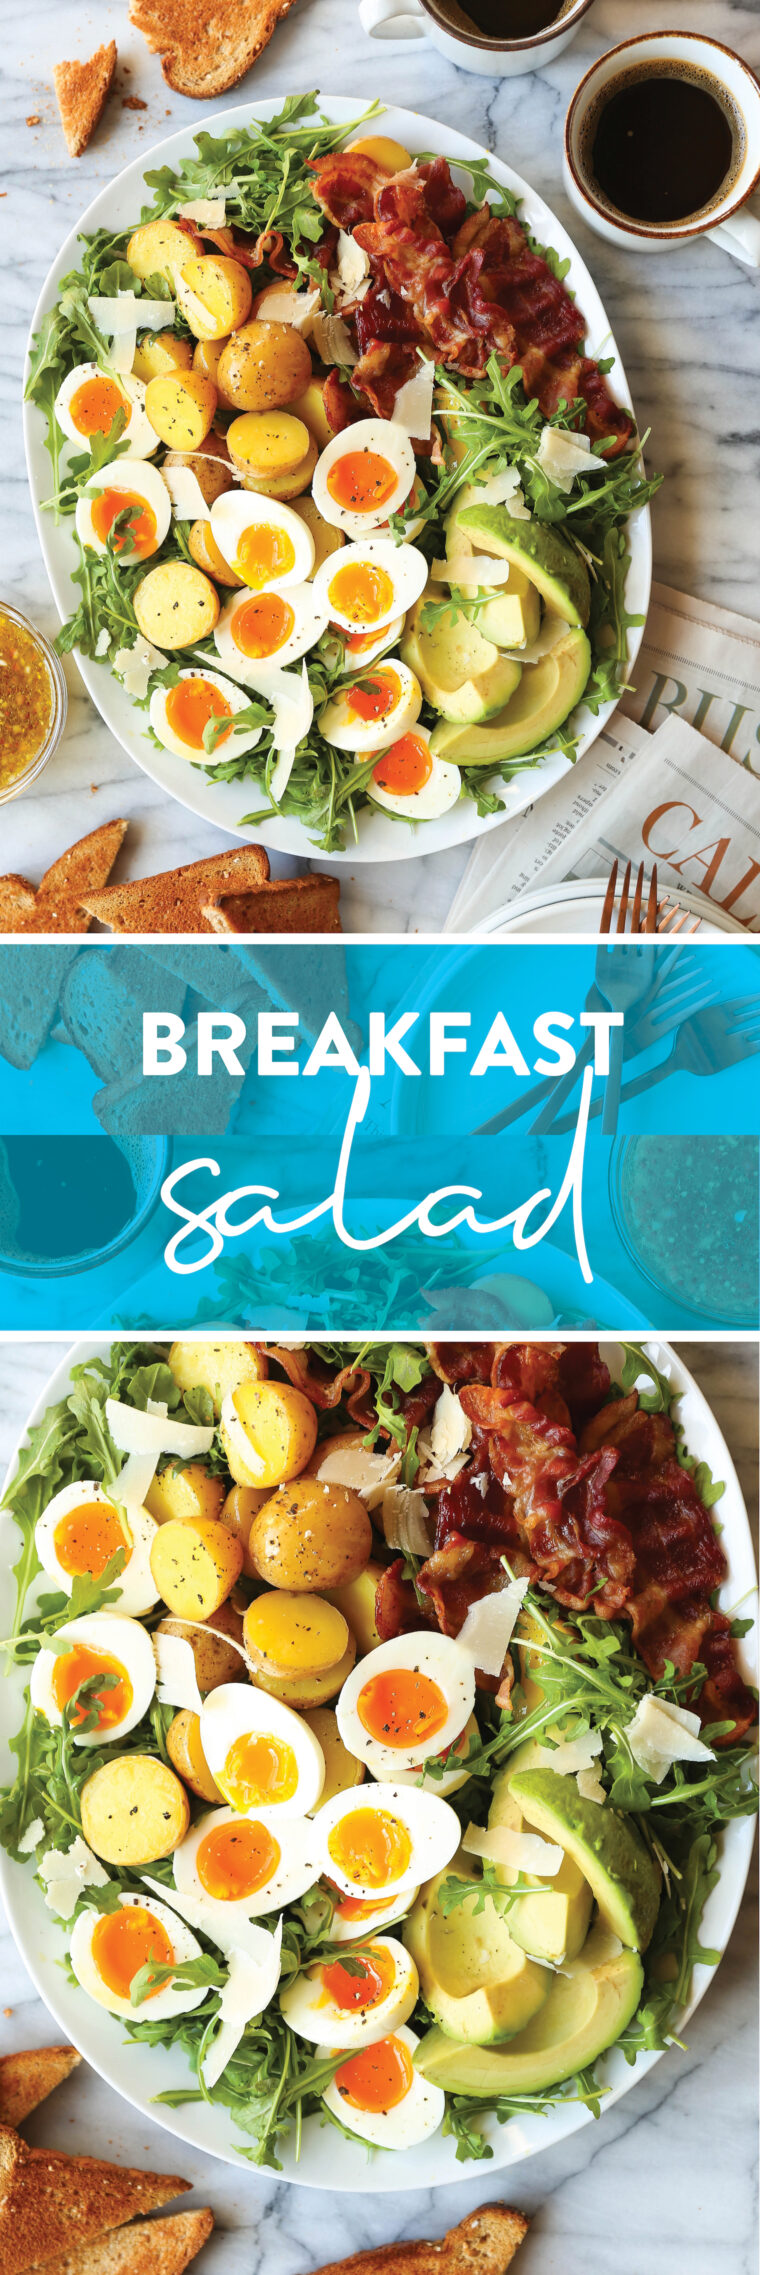 Салат на сніданок - сніданок, заради якого варто прокинутися!  Зі свіжою зеленню, хрустким беконом, вареними яйцями та пікантним, гострим гірчичним вінегретом!